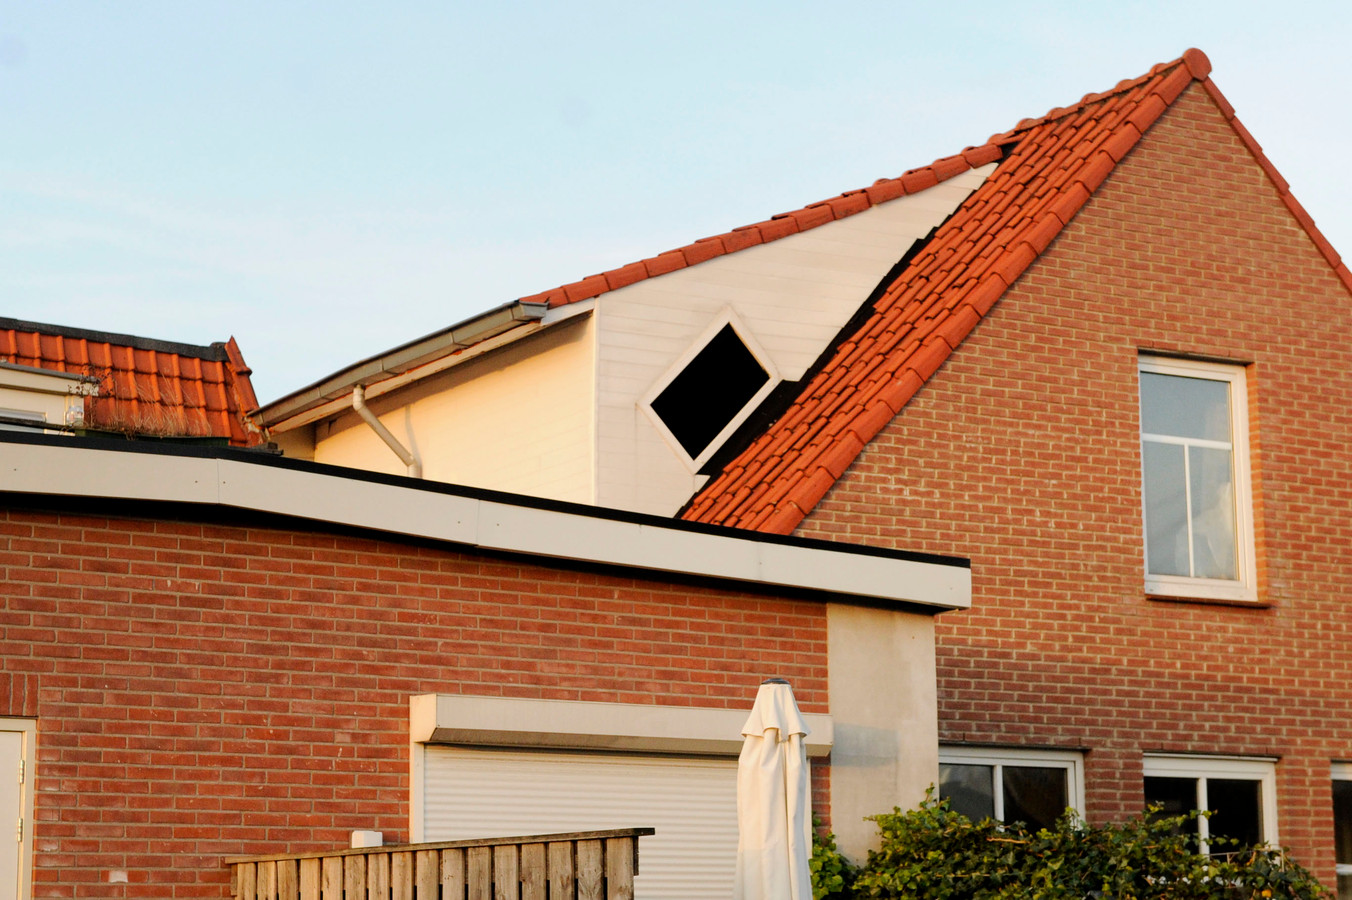 De dakkapel op het pand van Gerrit Koertshuis aan de Deurningerstraat voldoet volgens de gemeente Oldenzaal niet aan de omgevingsvergunning.